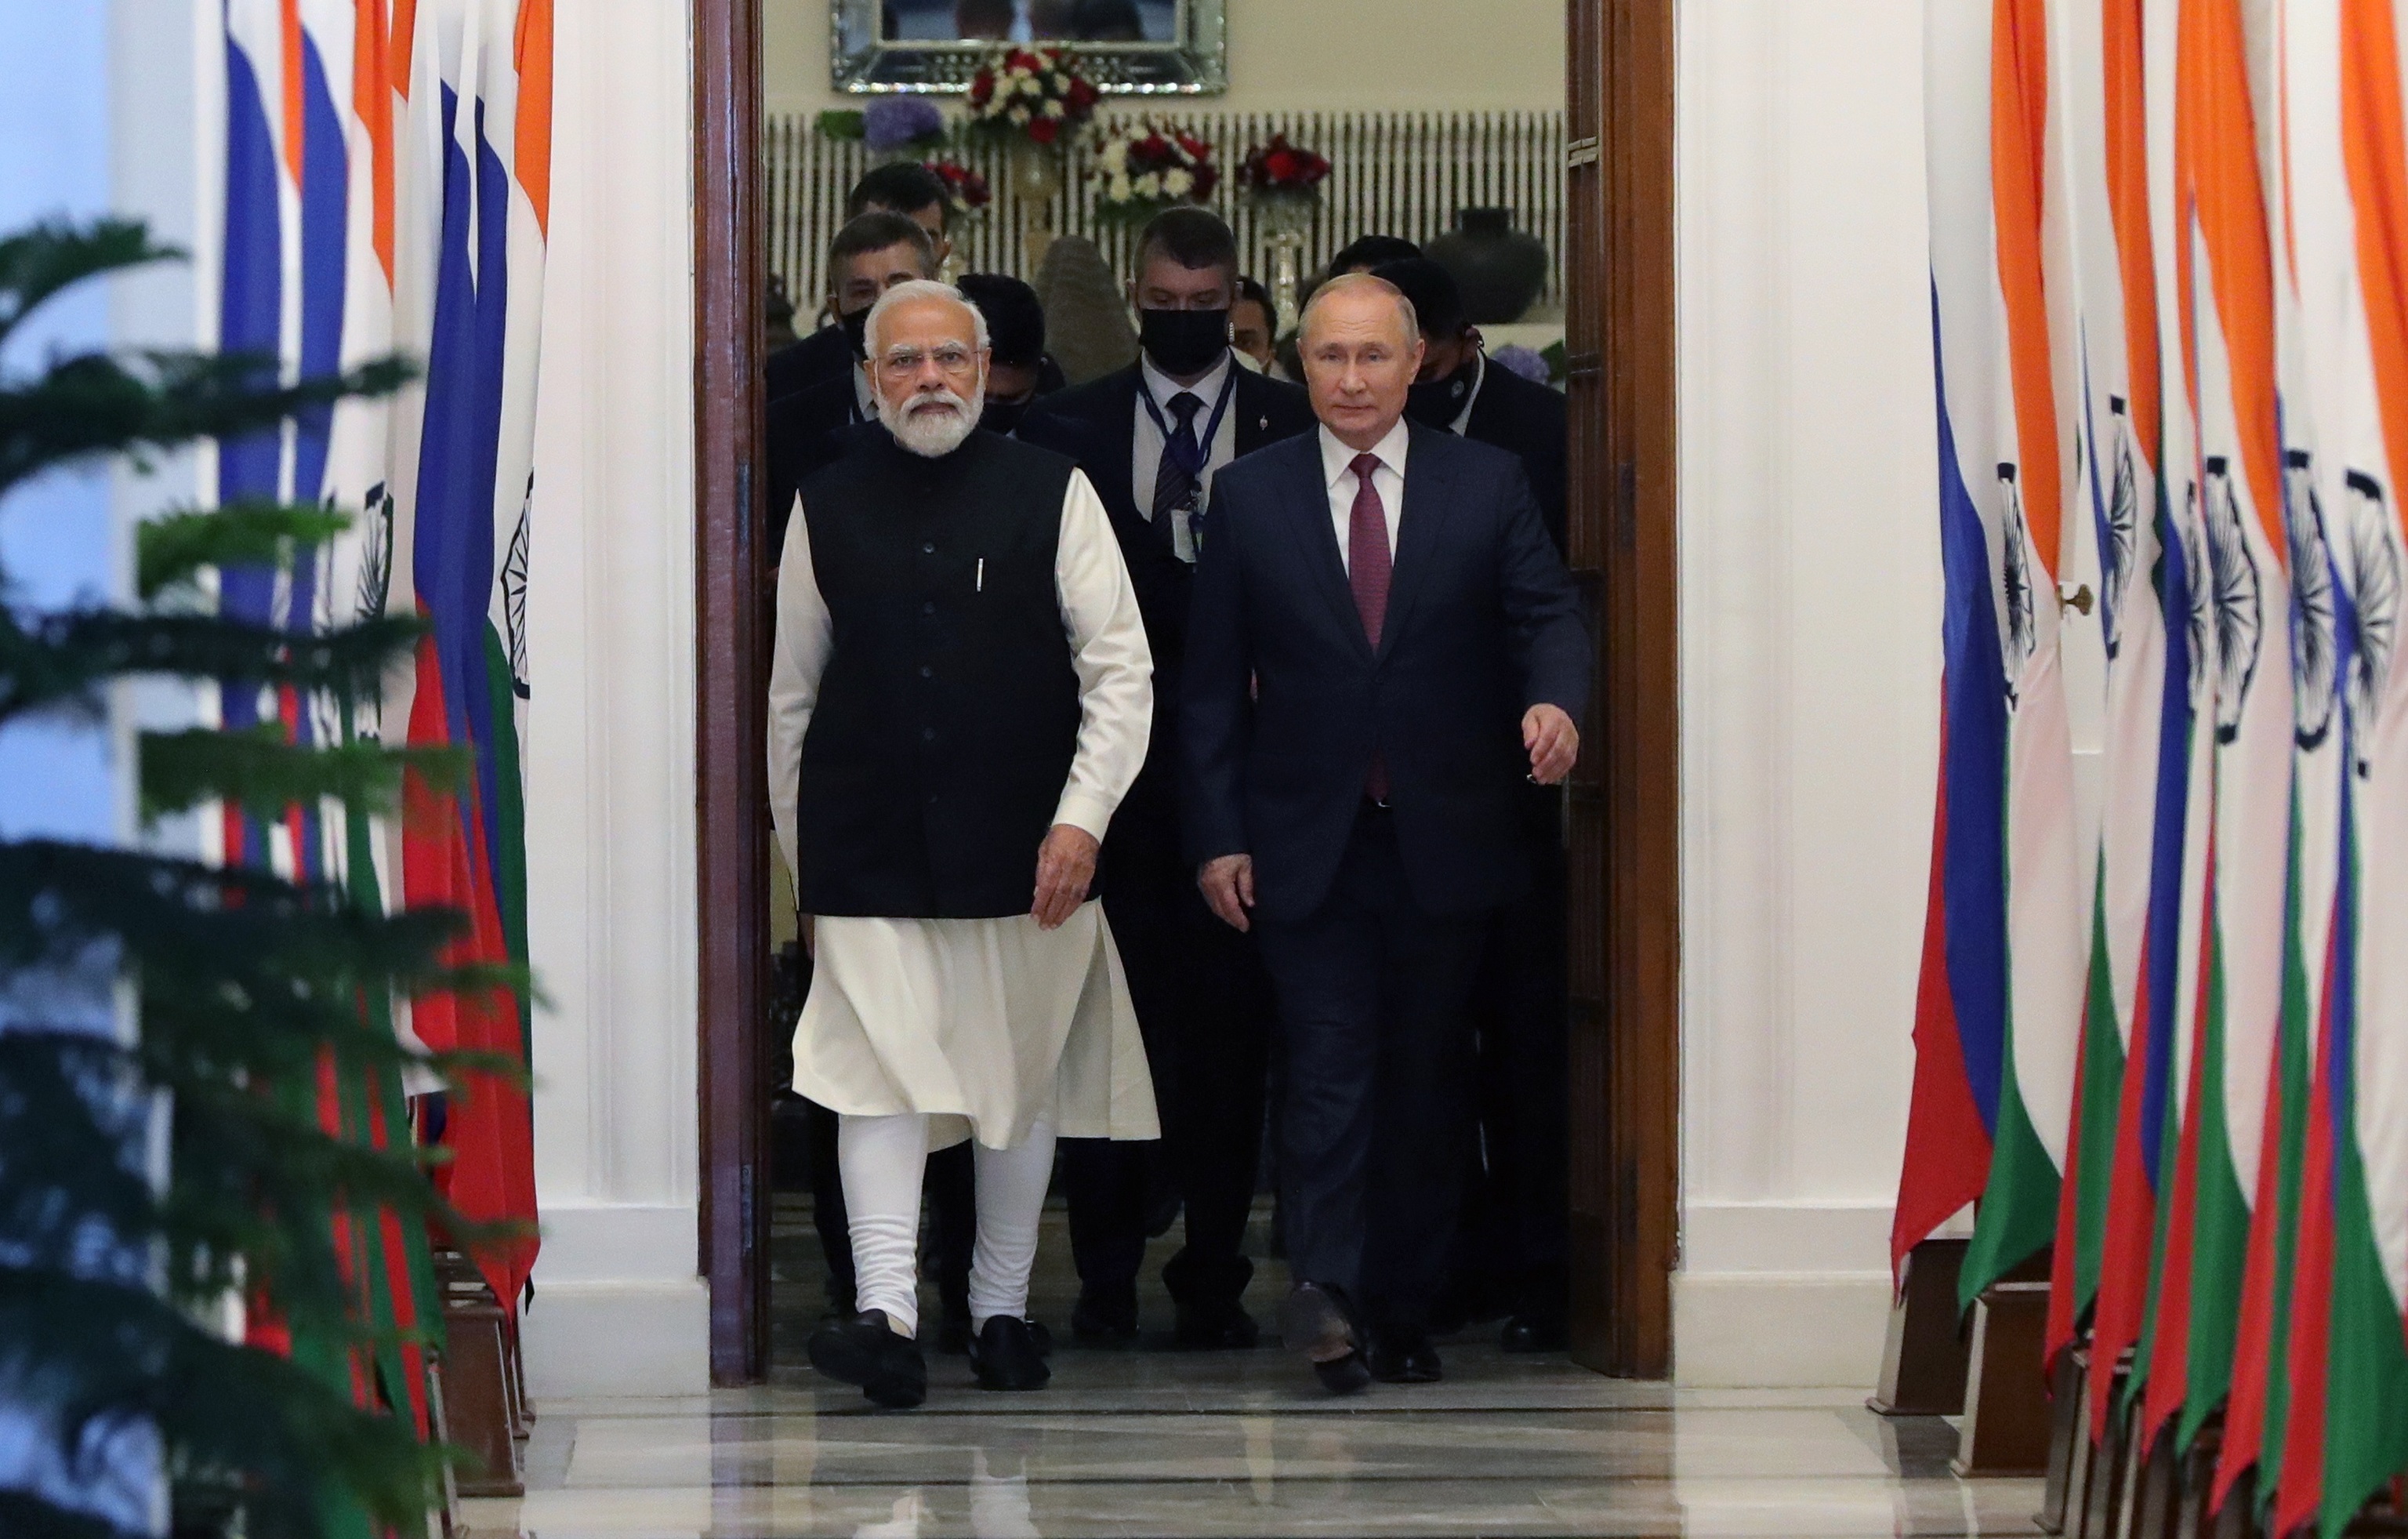 Nerendra Modi recibe a Vladimir Putin en el palacio presidencial de Nueva Delhi.